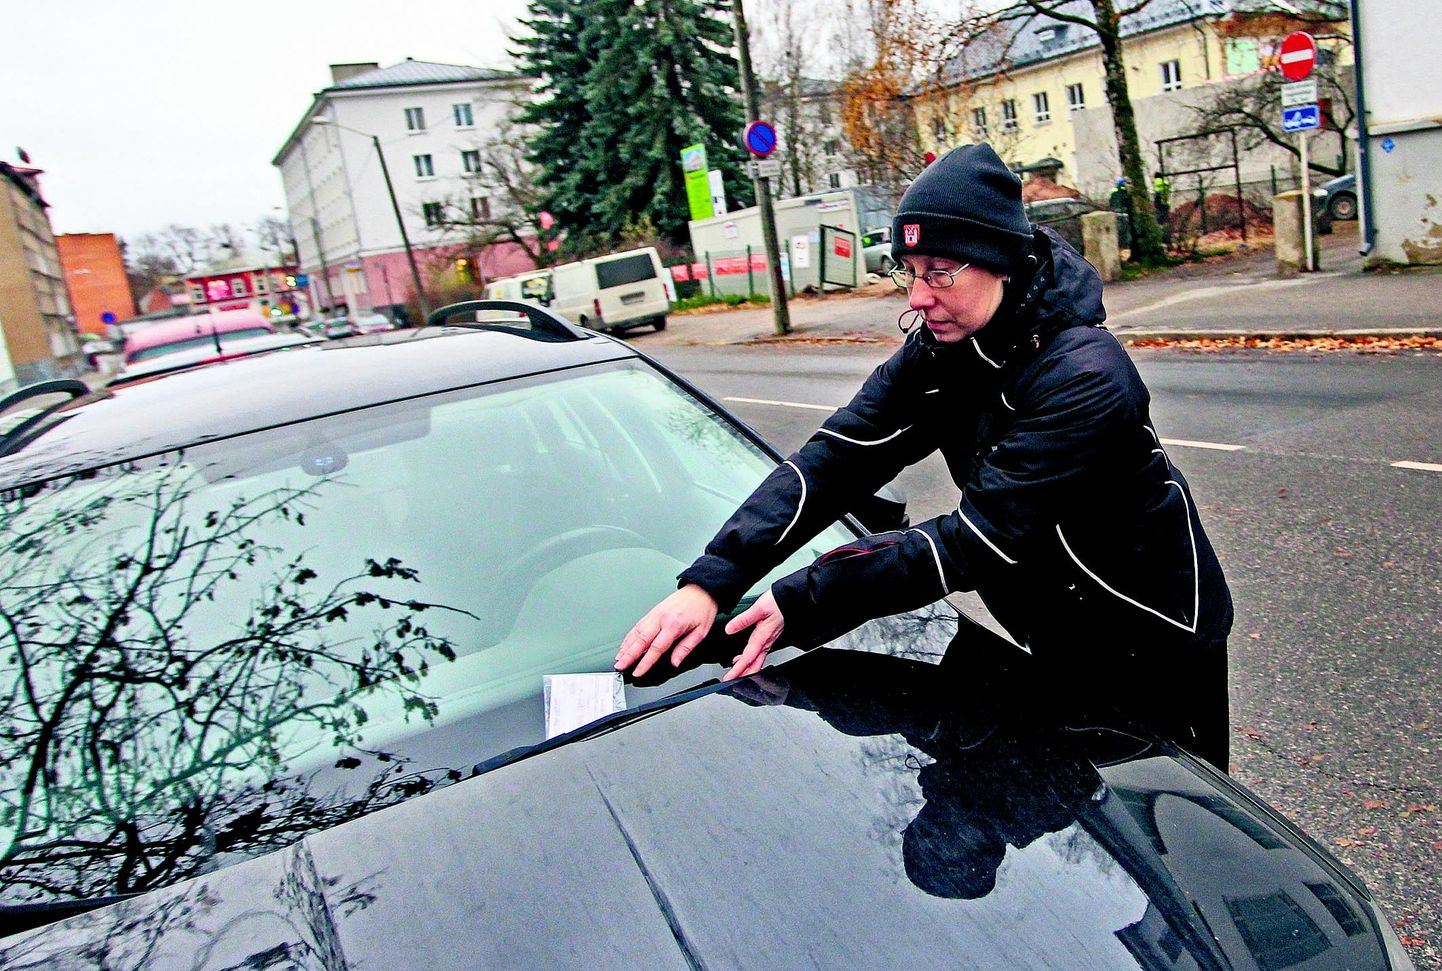 Tartu menetlusametnik Aune Lõo kirjutas eile Akadeemia tänaval välja viivistasuotsuse, sest parkimiskell oli jäänud sõidukis välja panemata. Tema sõnul on just parkimiskella kiiruga äraunustamine sage trahvimispõhjus.